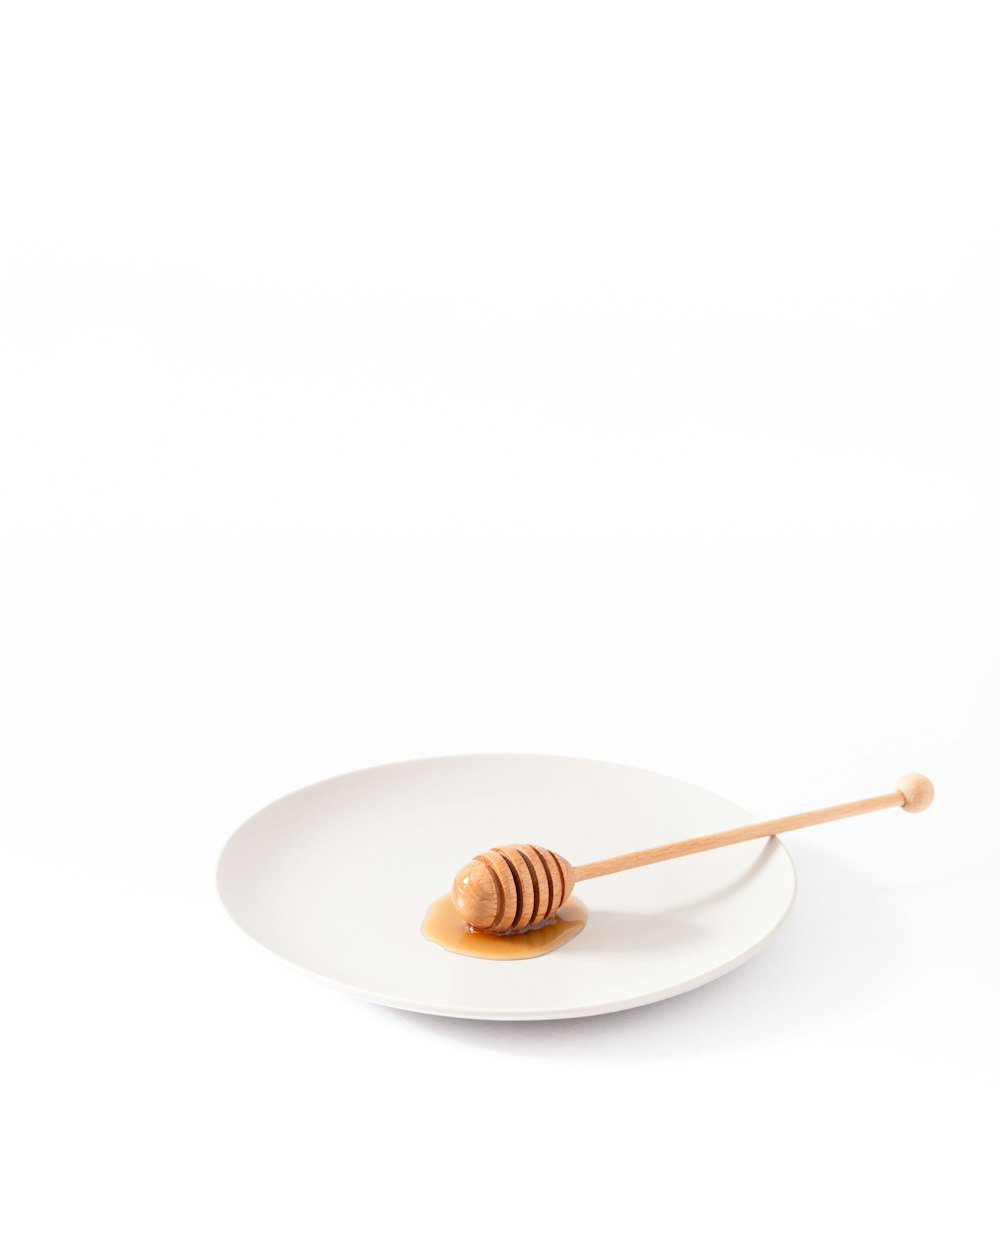 cucharón de miel en un plato vacío